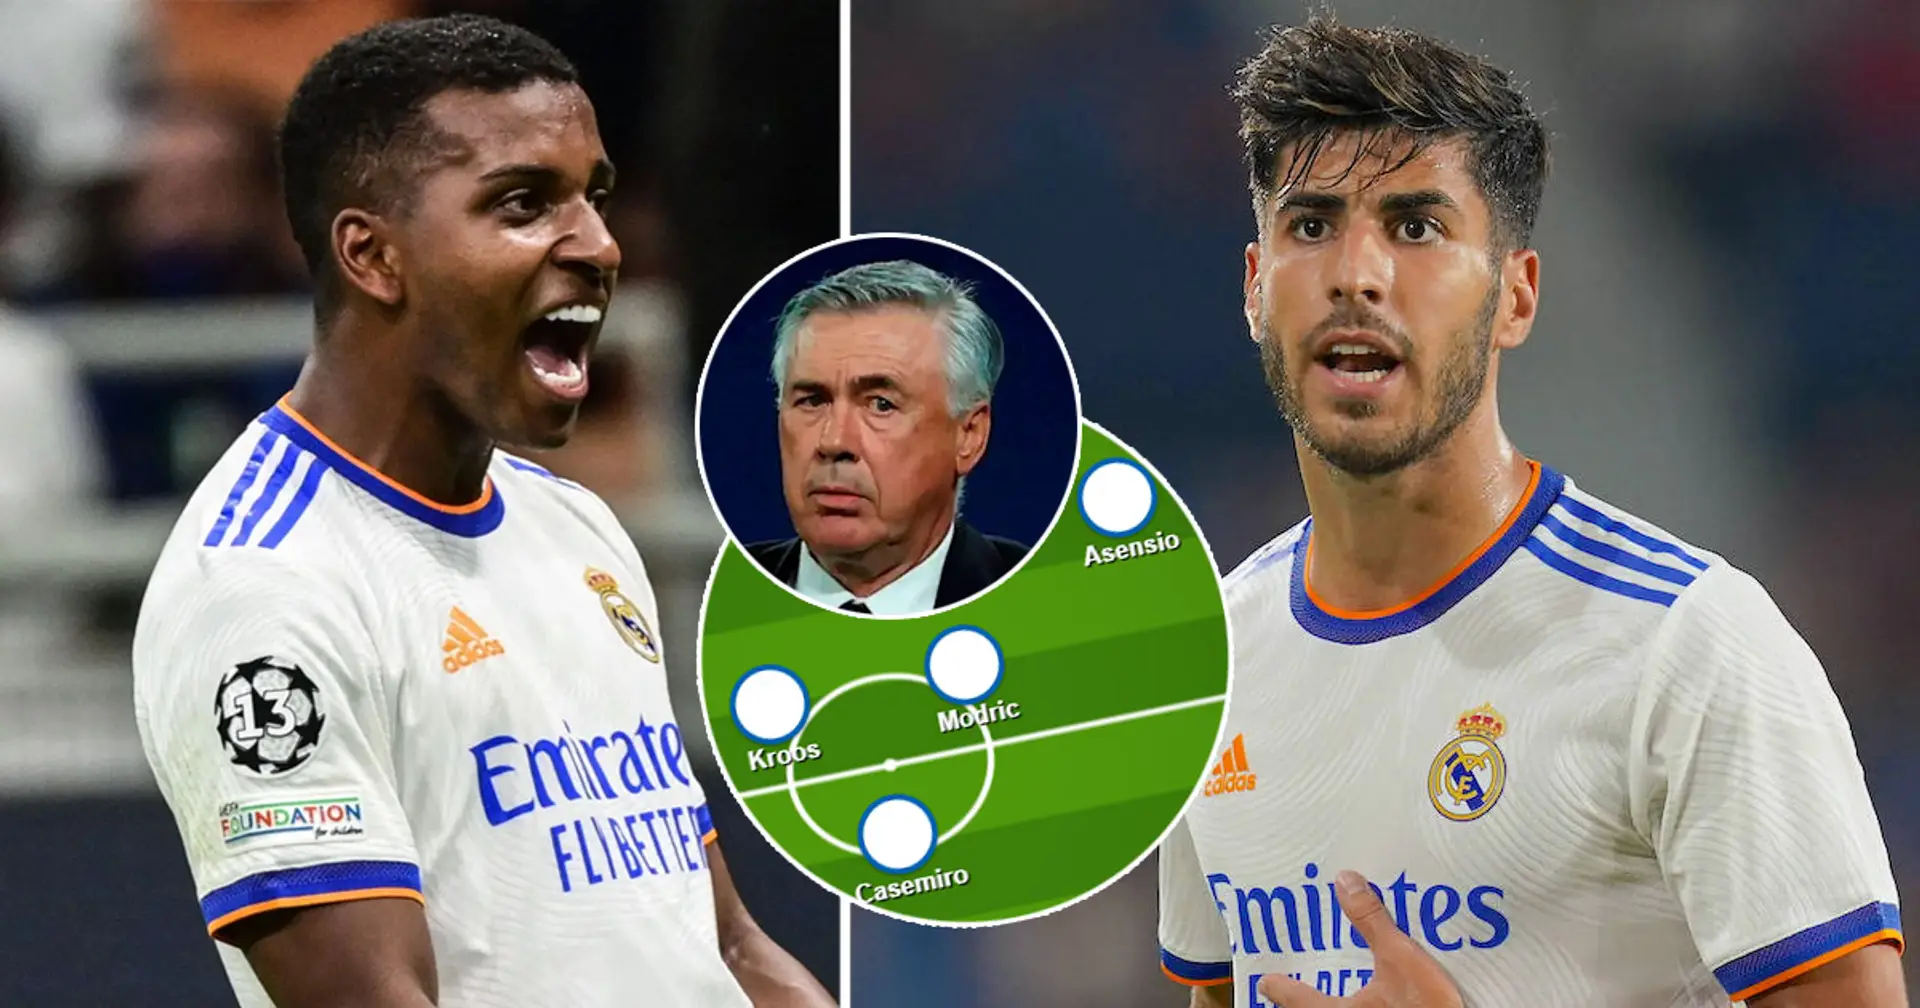 ¿Rodrygo o Asensio por la derecha? Elige tu XI favorito del Real Madrid para el partido vs Sheriff Tiraspol entre 3 opciones